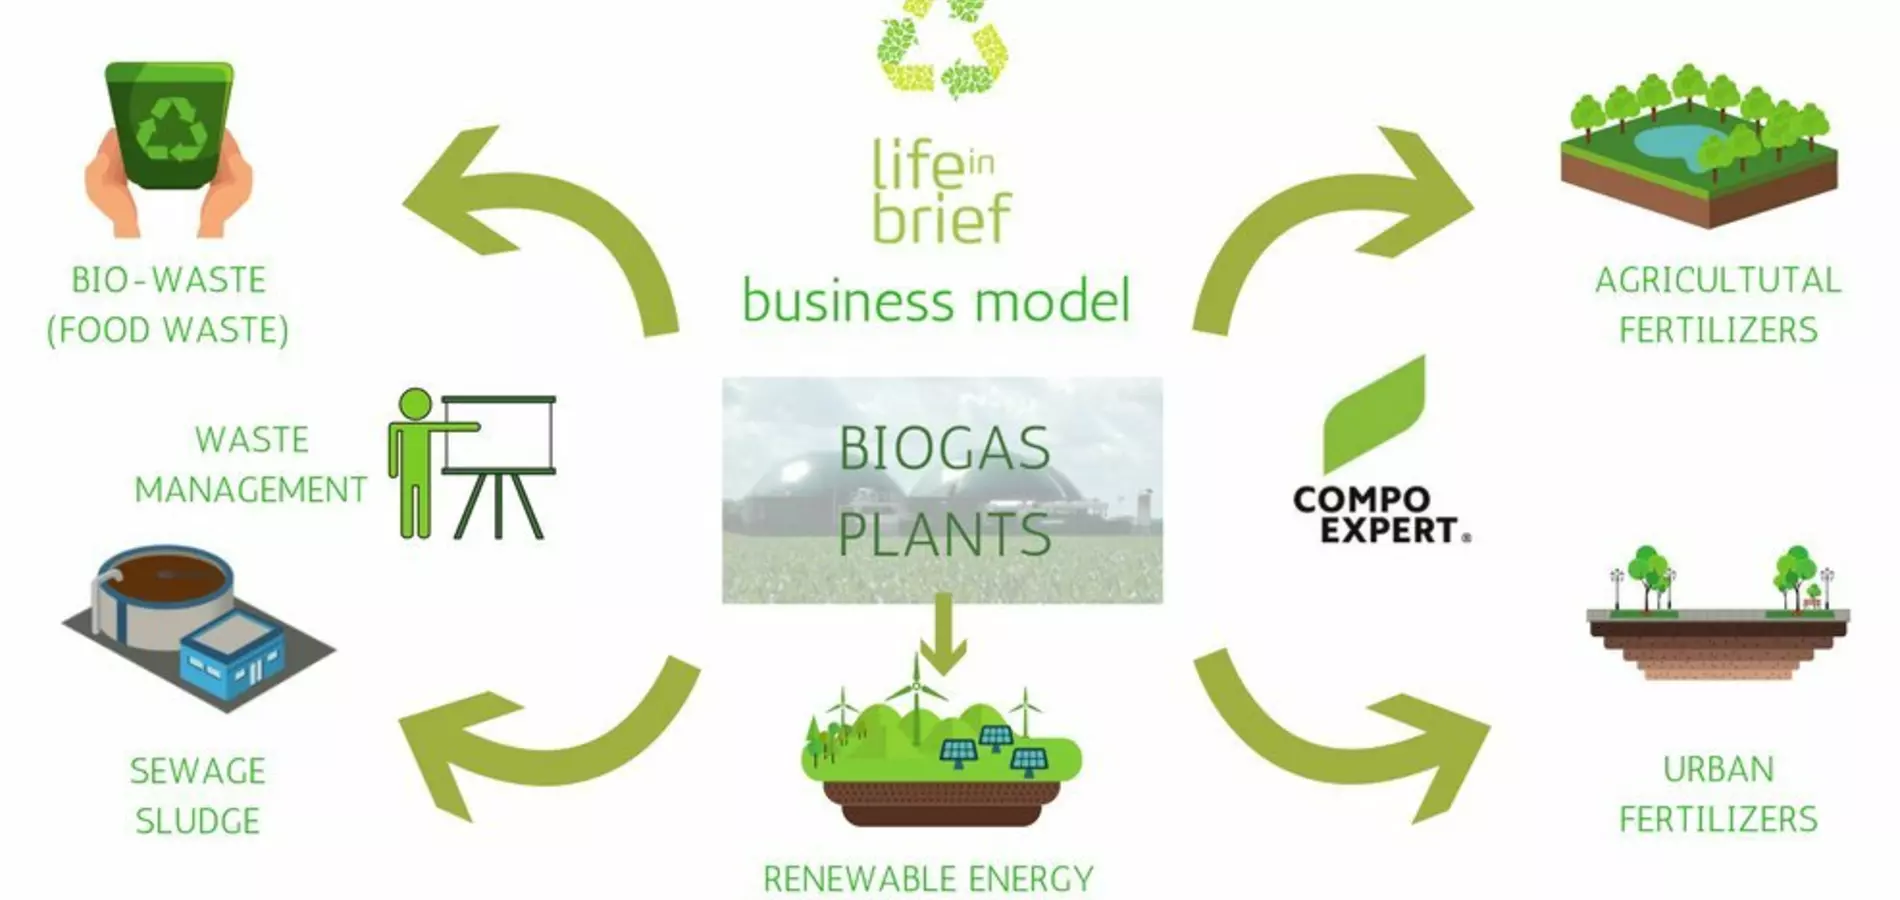 ¿Pueden convertirse los residuos de una planta de biogás en fertilizante?